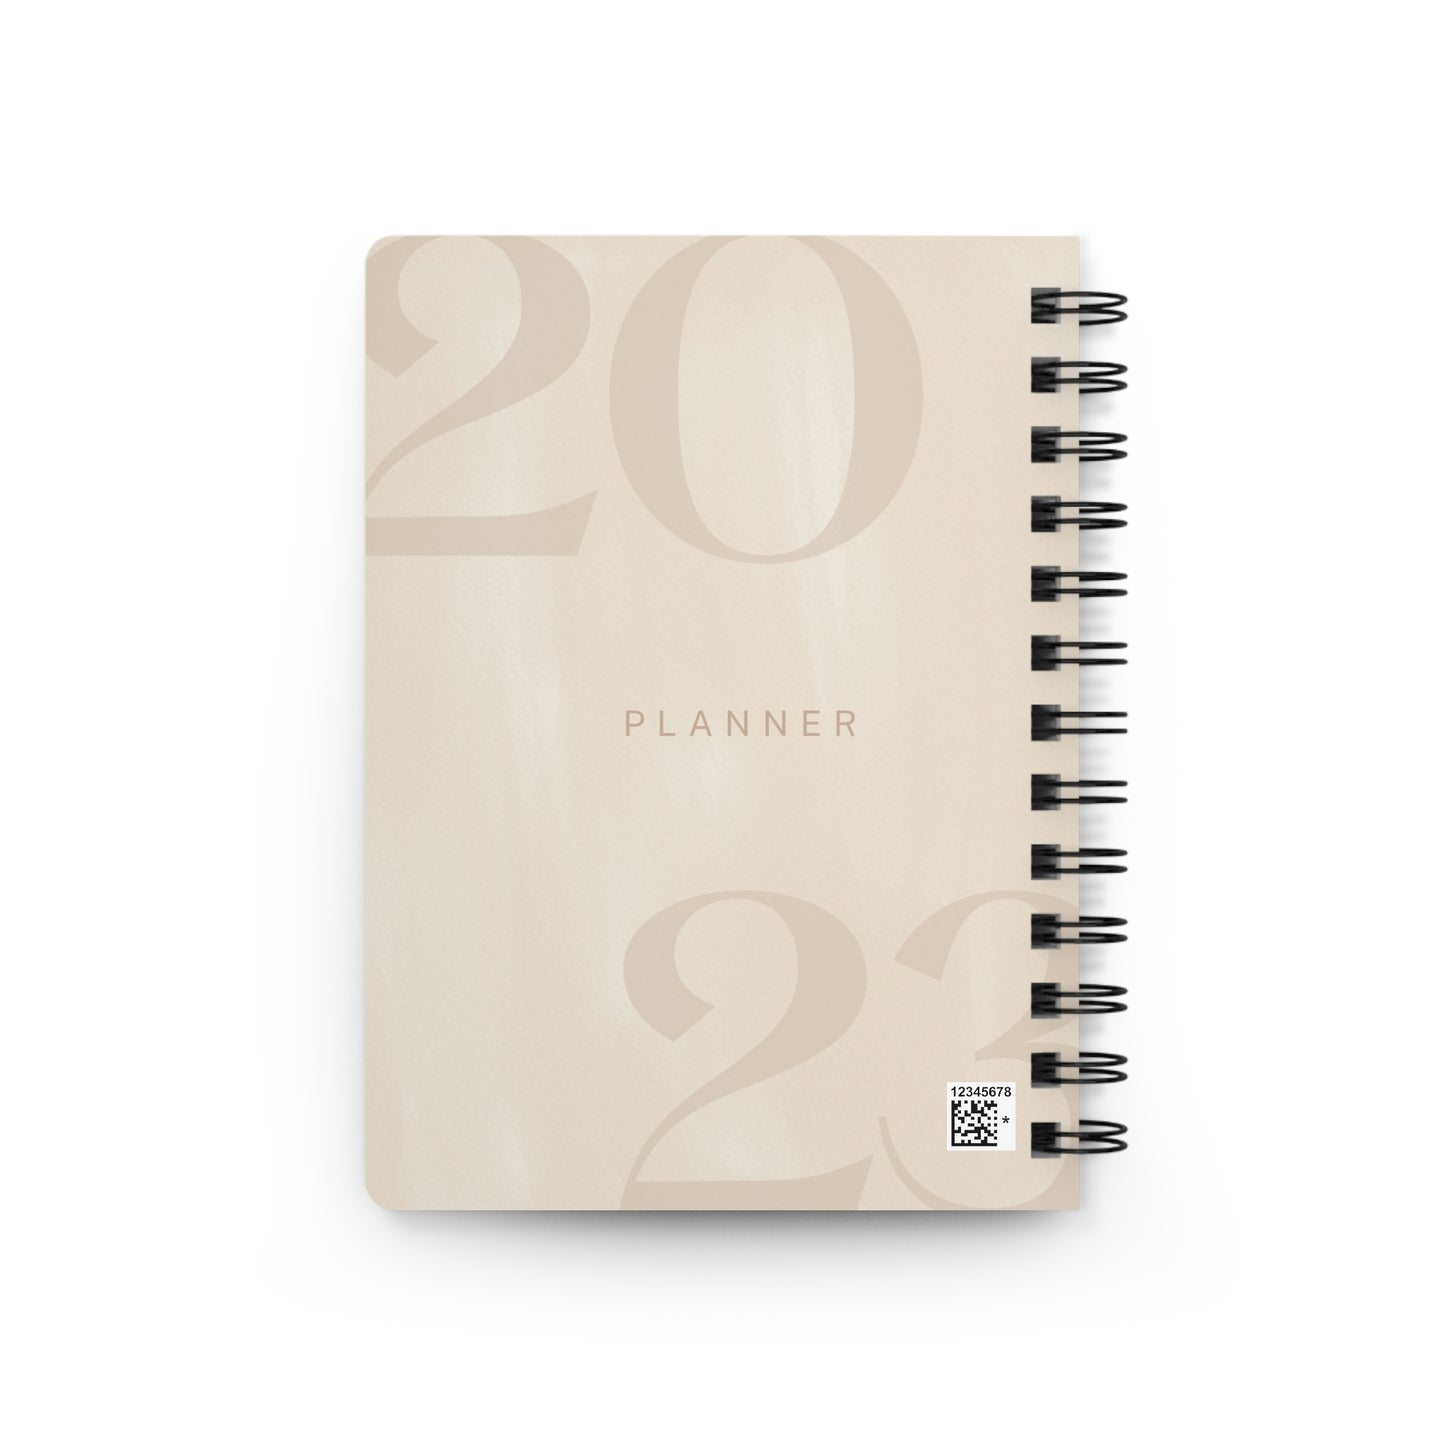 2023 Planner Spiral Bound Journal